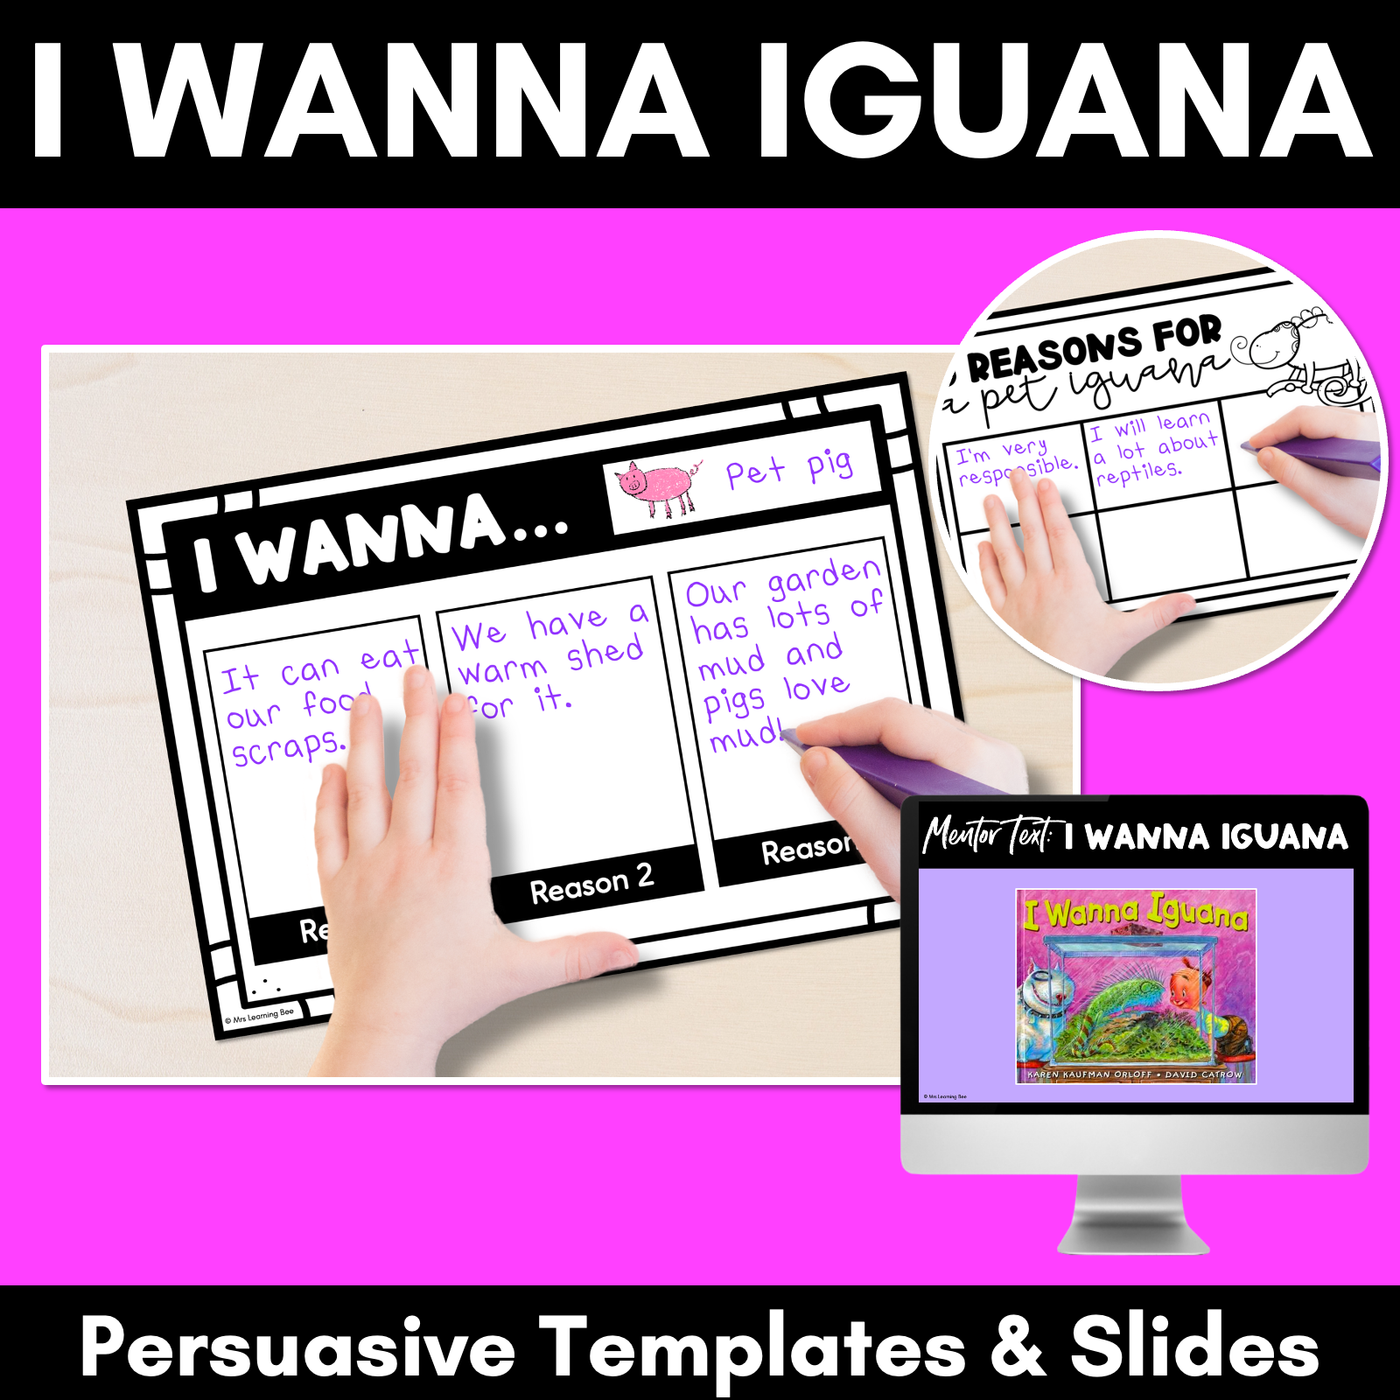 Persuasive Writing Templates & Slides - I Wanna Iguana